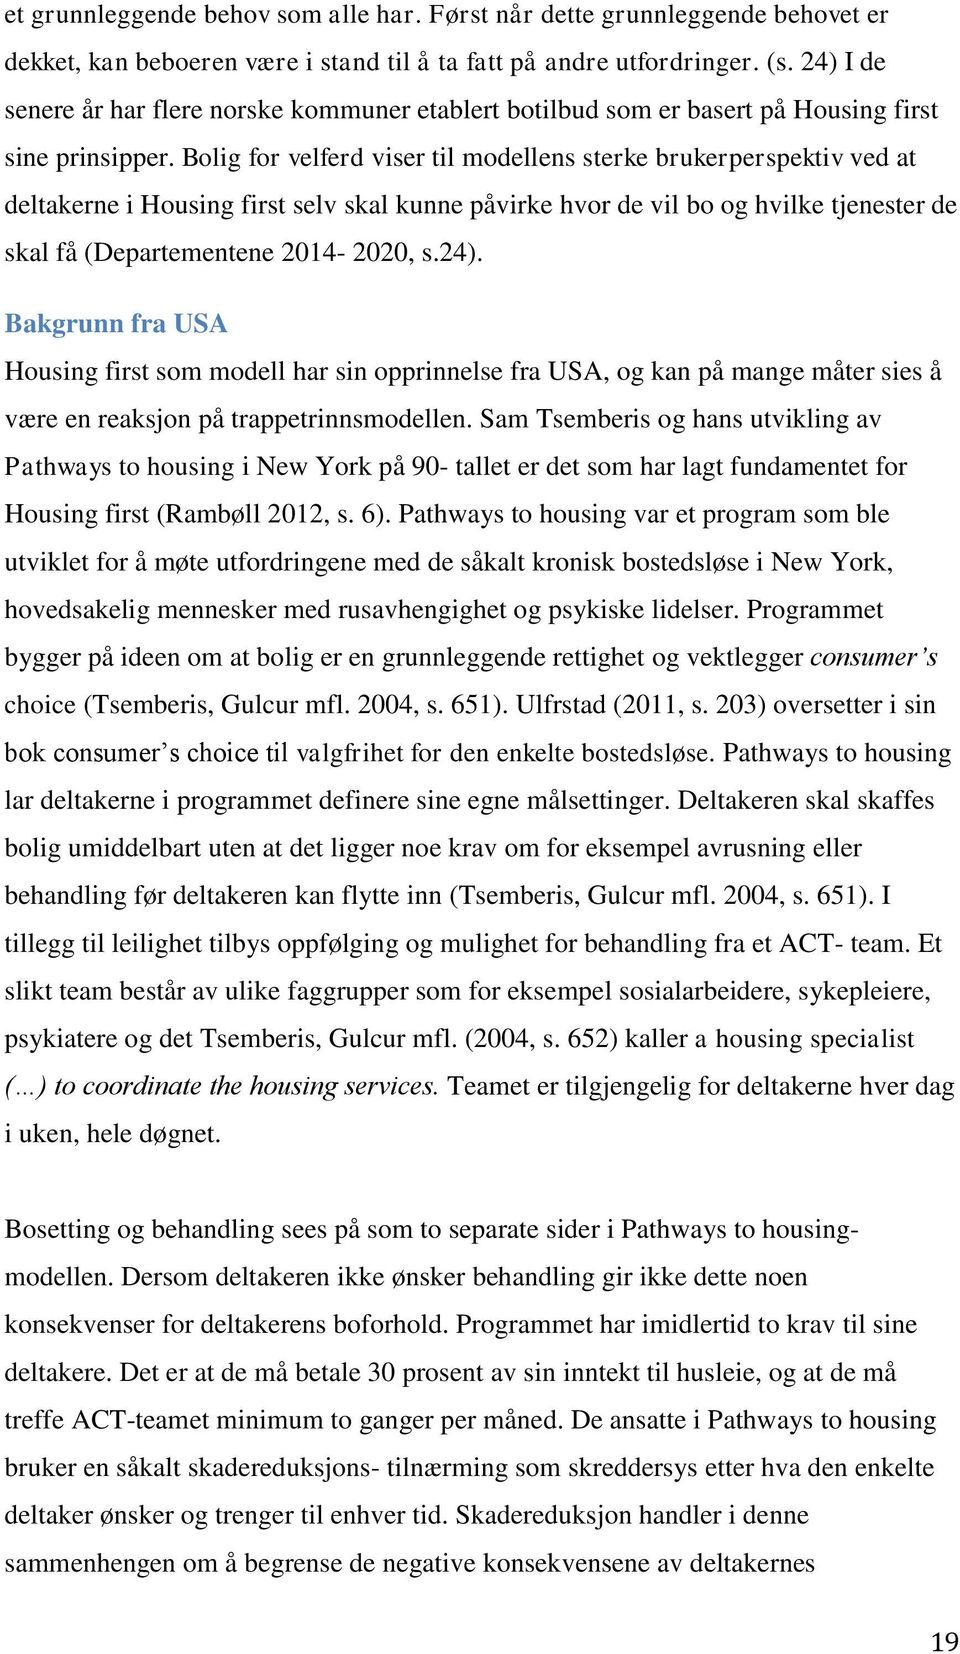 Bolig for velferd viser til modellens sterke brukerperspektiv ved at deltakerne i Housing first selv skal kunne påvirke hvor de vil bo og hvilke tjenester de skal få (Departementene 2014-2020, s.24).